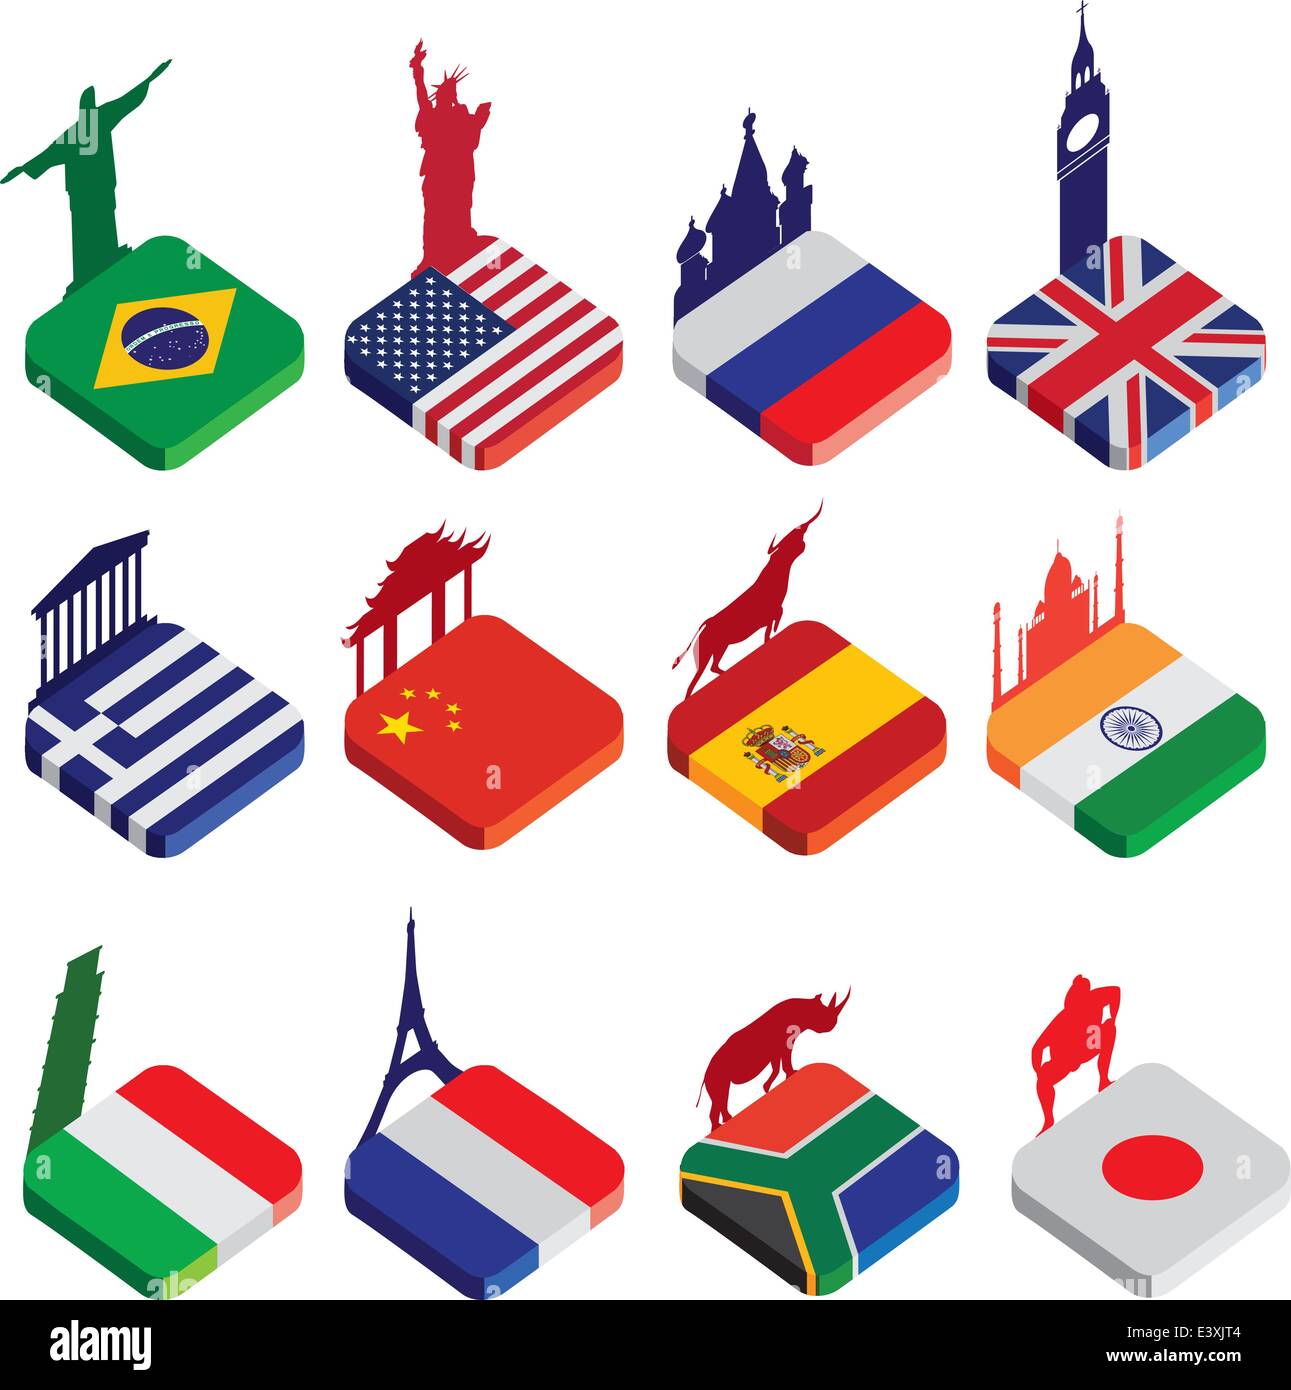 Monde des sites célèbres comme la place d'un icône ou bouton dessins de drapeaux en couleur isolé sur un fond blanc avec des silhouettes de famo Illustration de Vecteur